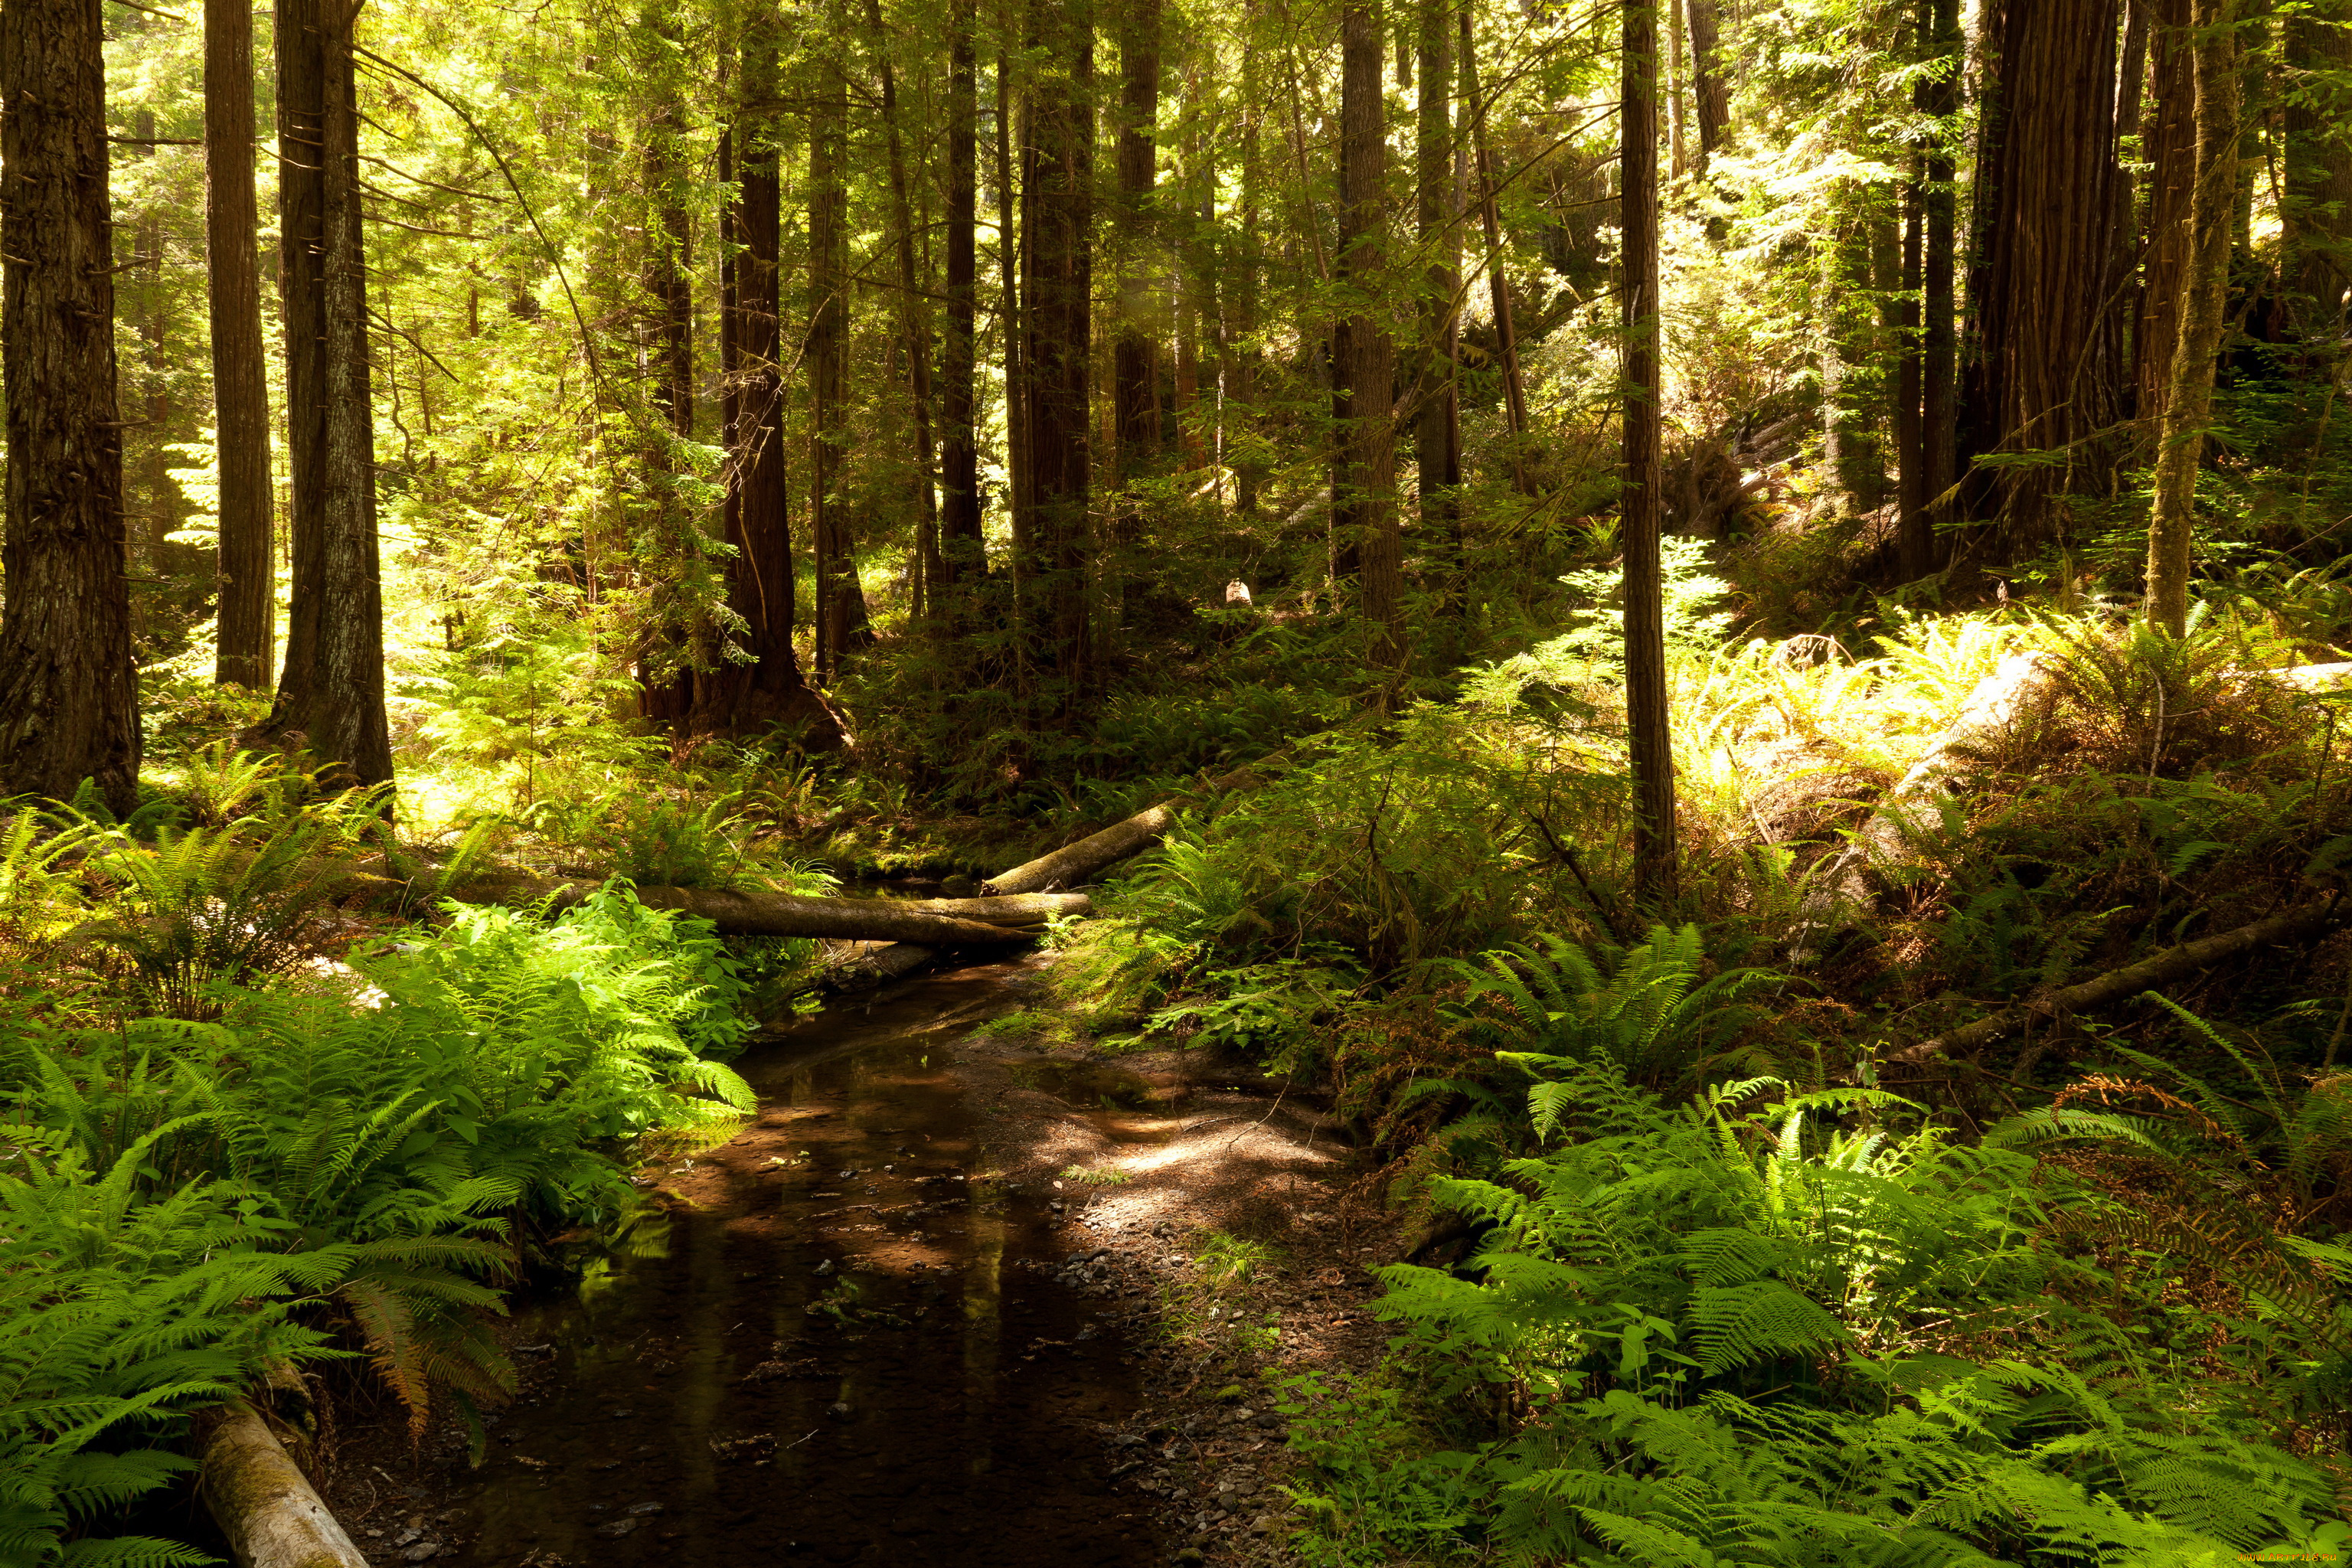 Страстны лес. Лес секвой. Национальный парк «Редвуд» Калифорния, США. Ручей в лесу. Природа США леса.